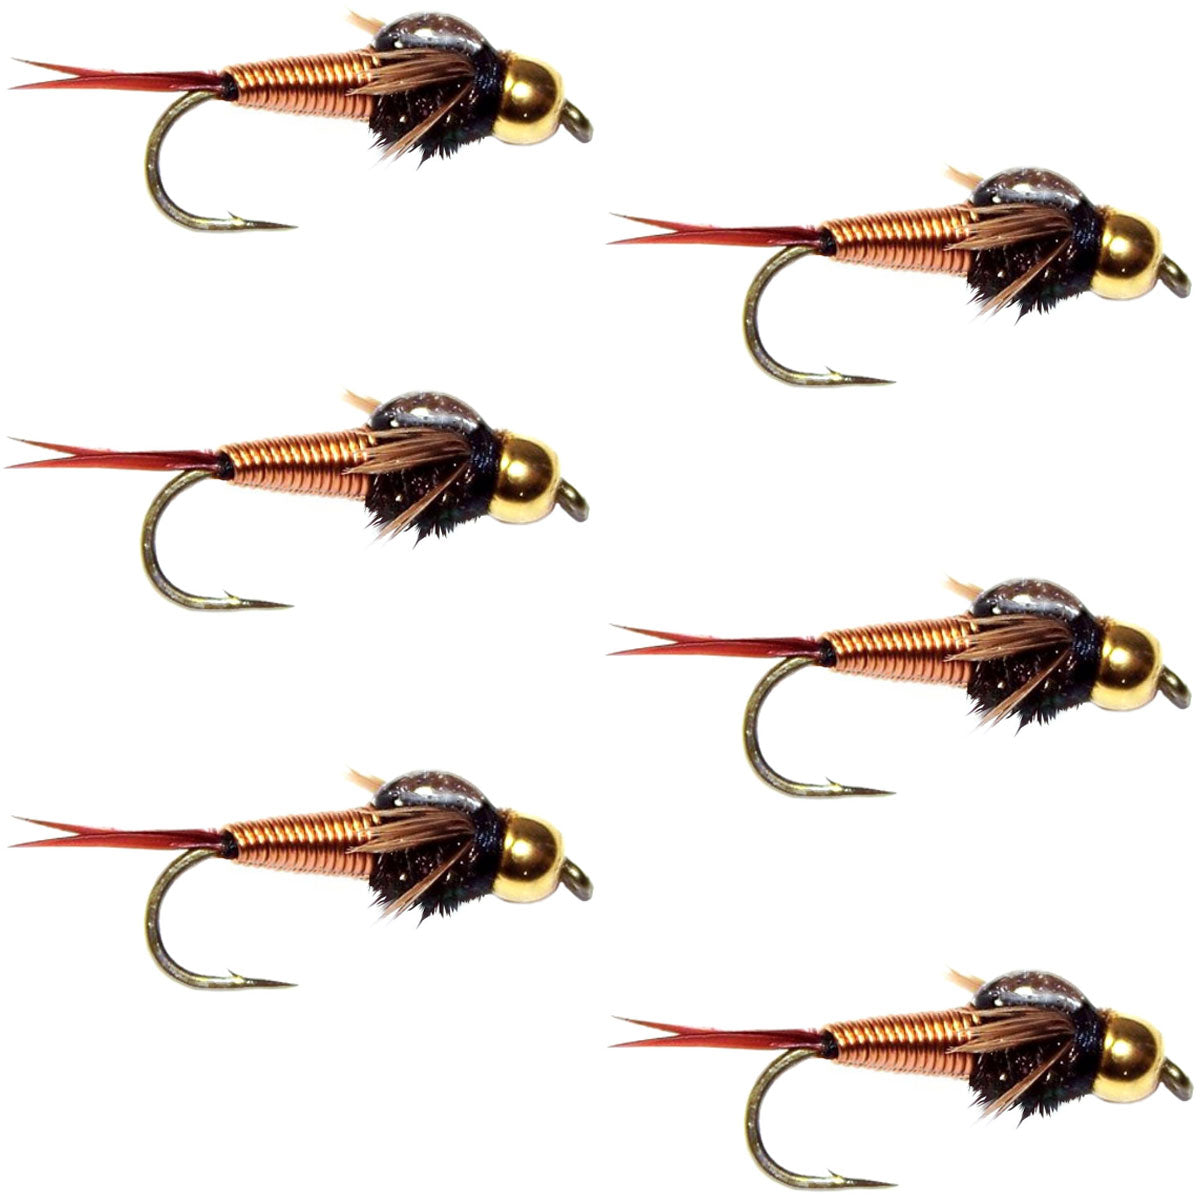 Bead Head Copper John Nymph Fly Fishing Flies - Set of 6 Flies Hook Size 16